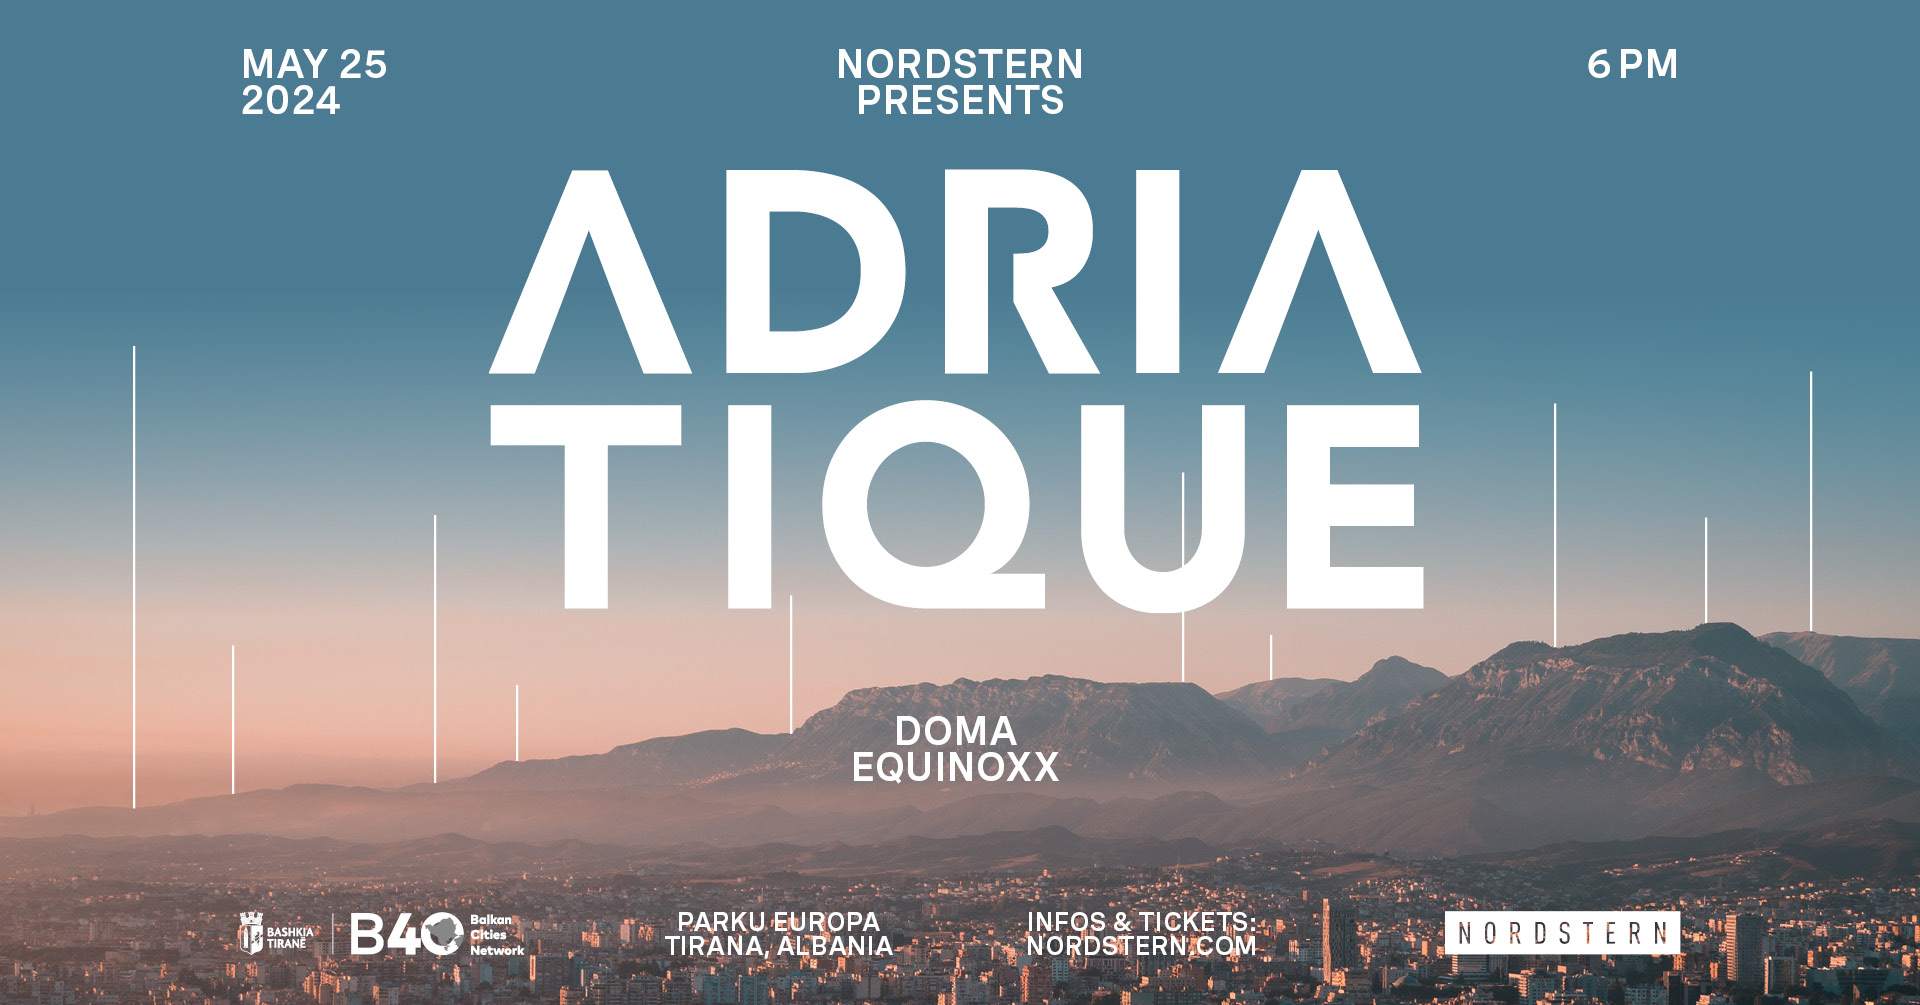 Nordstern presents: Adriatique - Página frontal